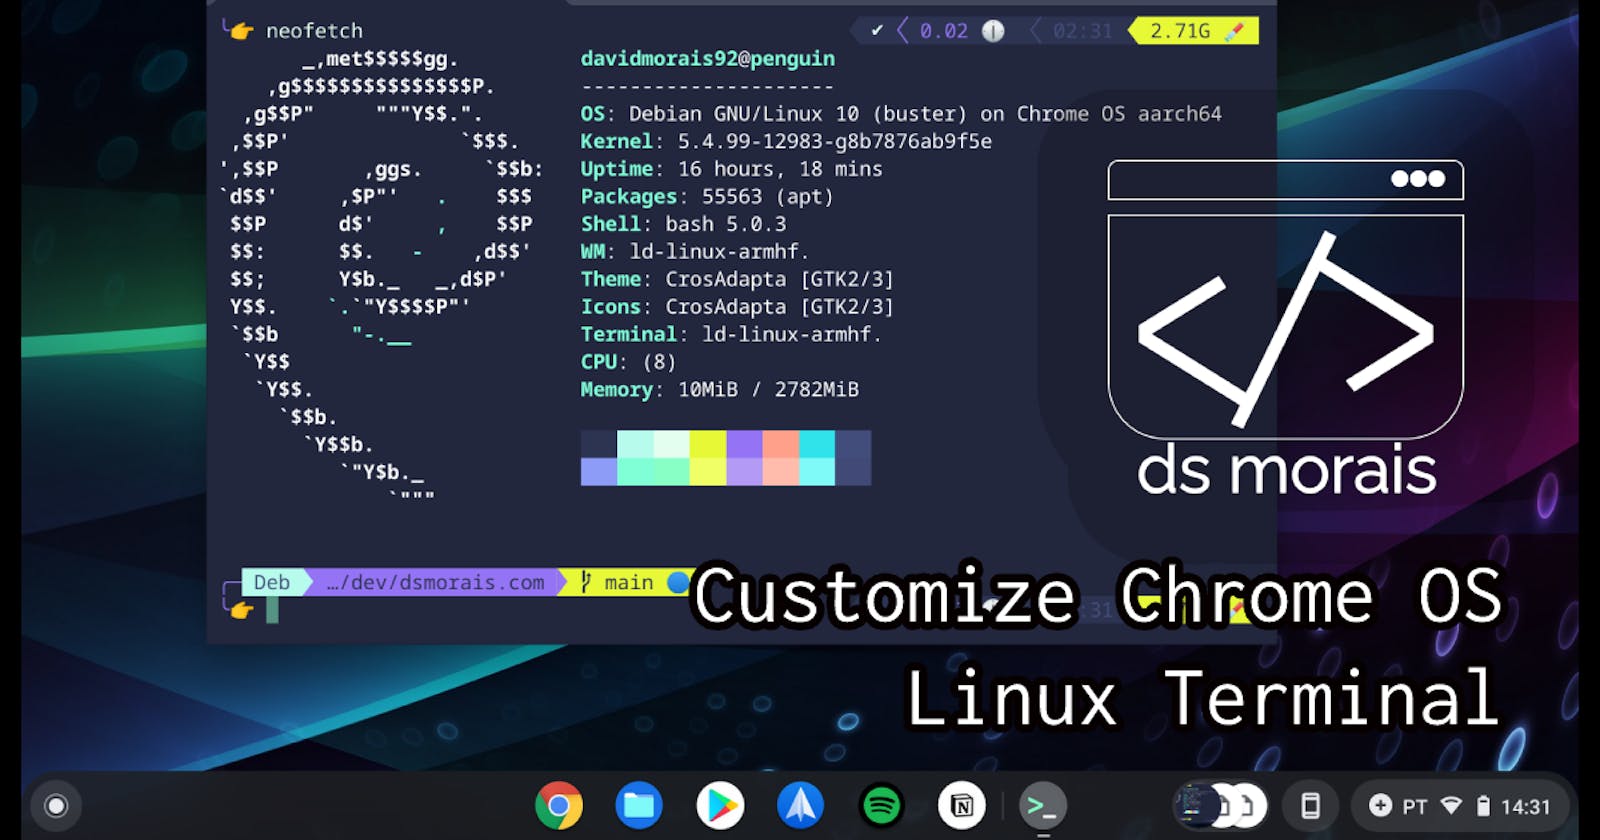 Customize Chrome OS Linux Terminal